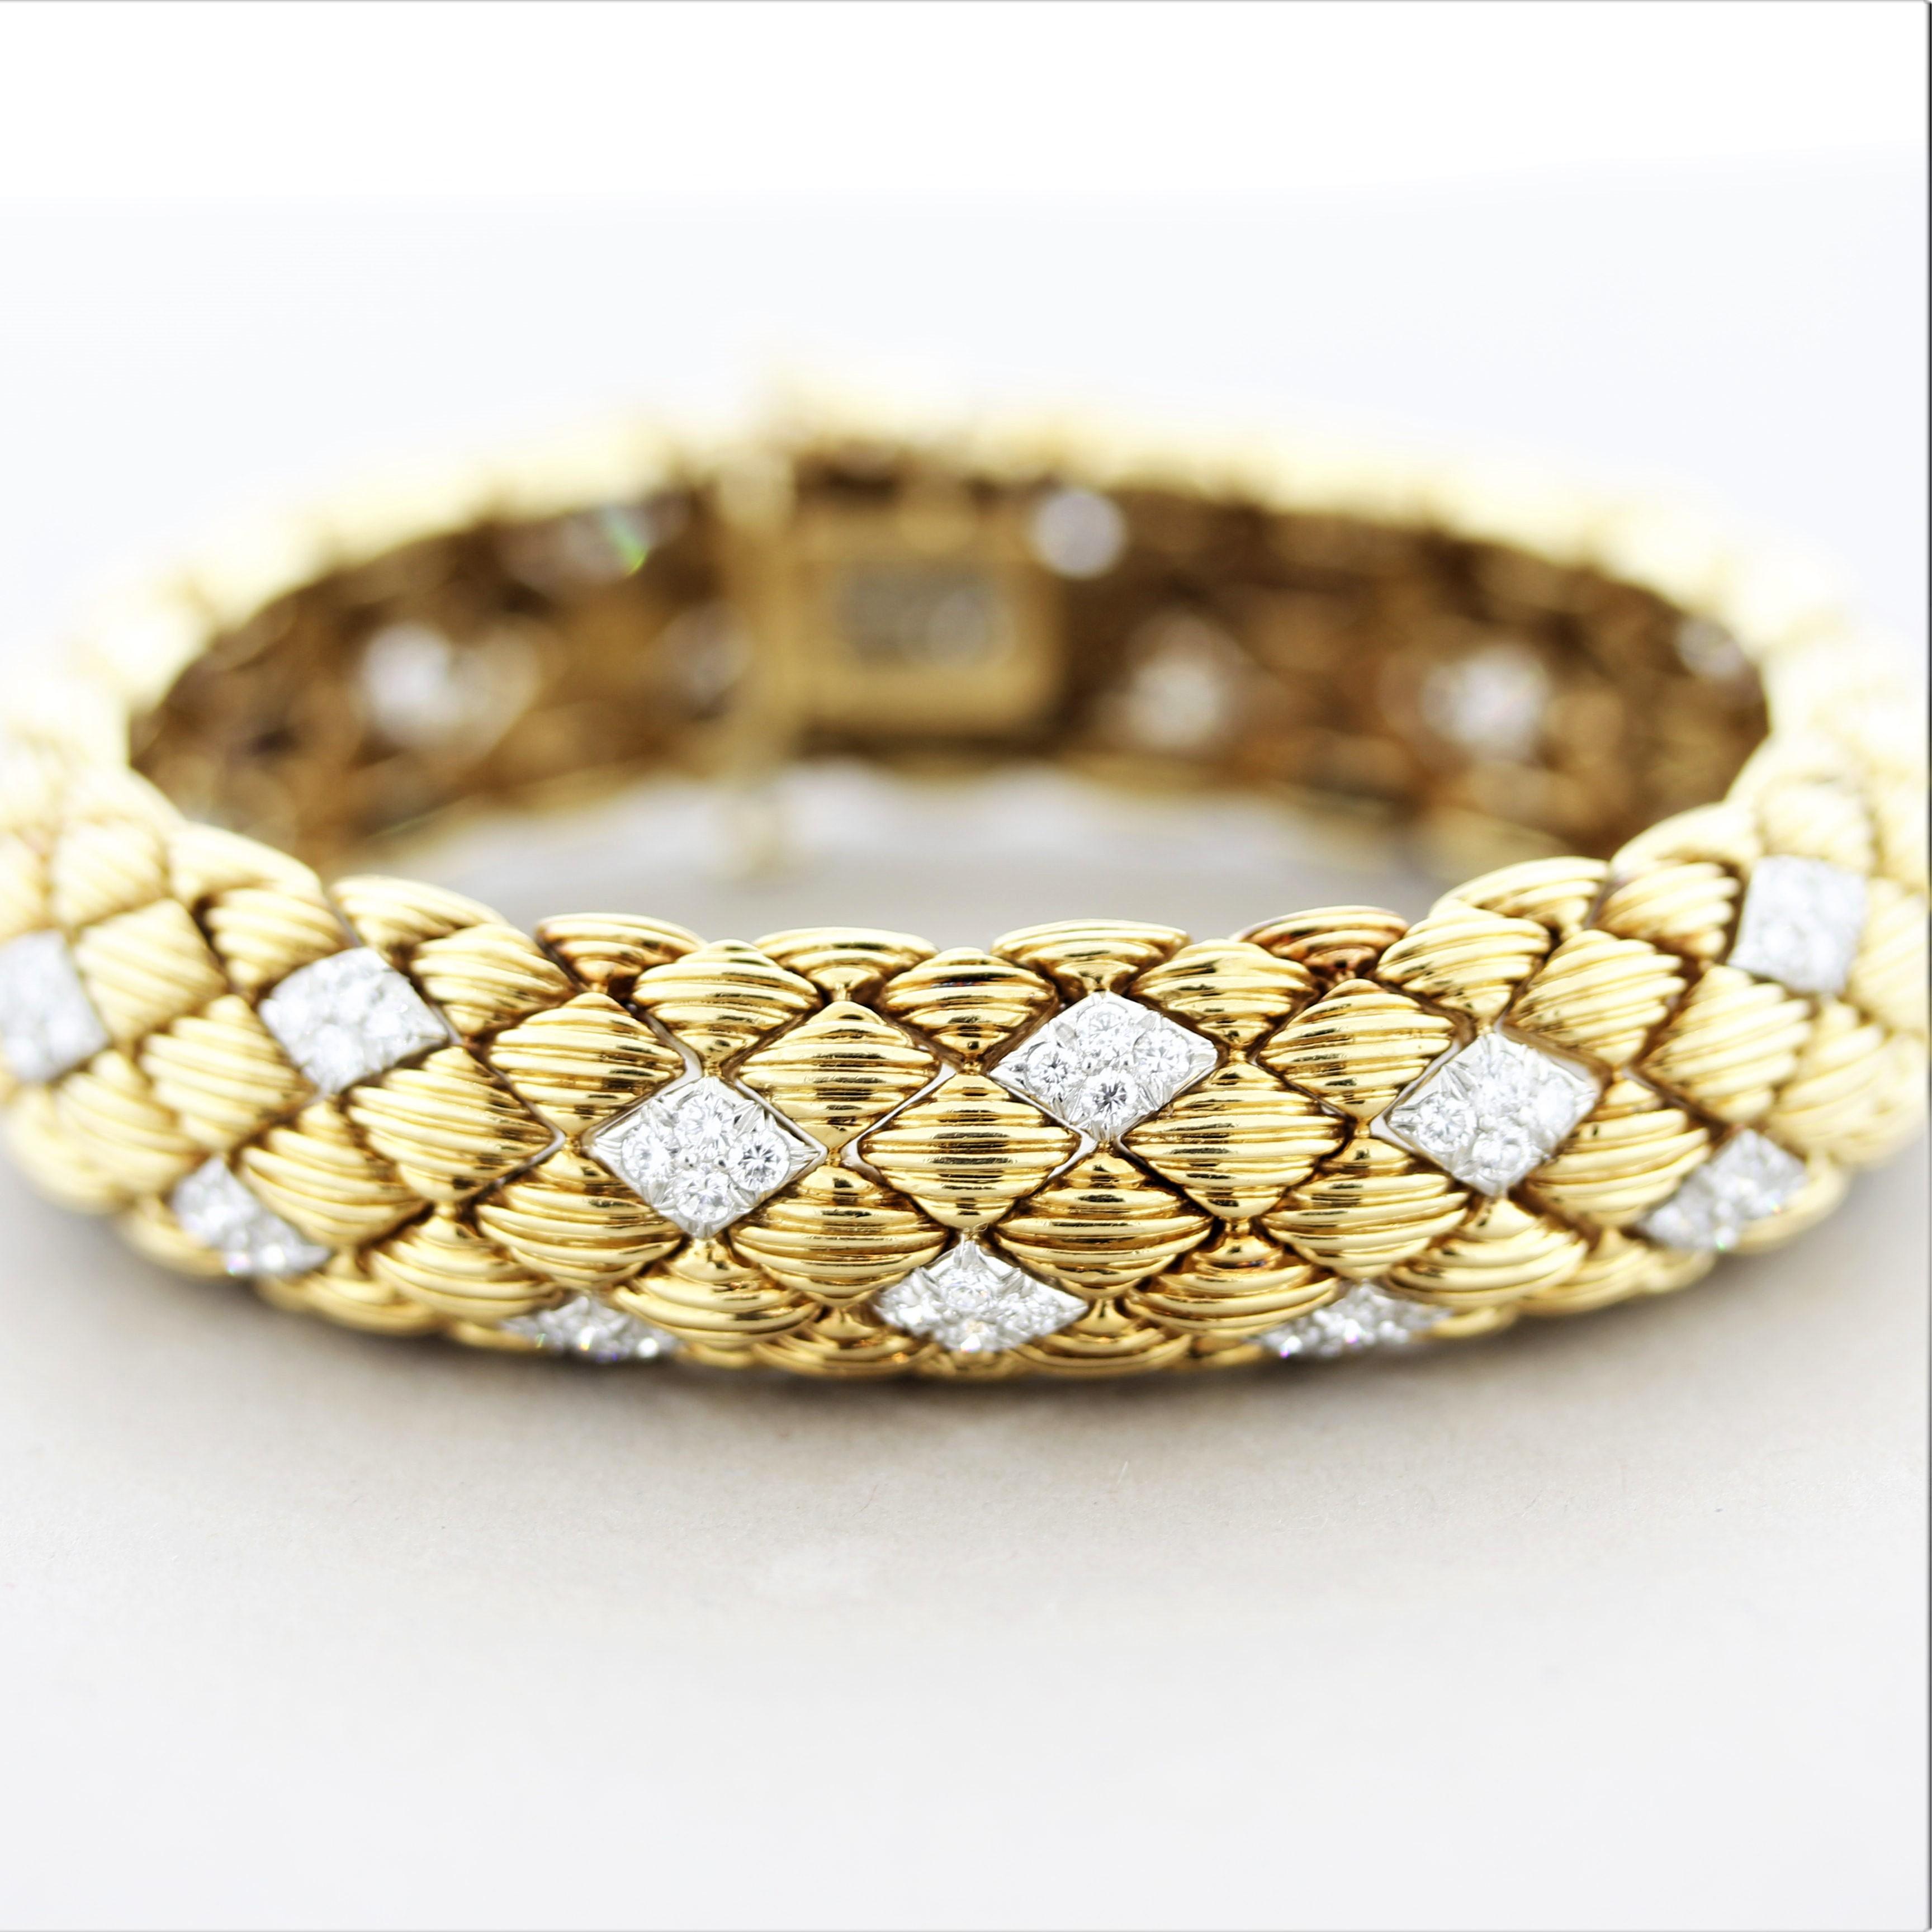 Un bracelet élégant et raffiné du célèbre bijoutier américain David Webb. Le bracelet présente 5 carats de diamants ronds taille brillant sertis dans des écailles d'or blanc en forme de diamant. Le reste du bracelet est en or jaune 18 carats, avec